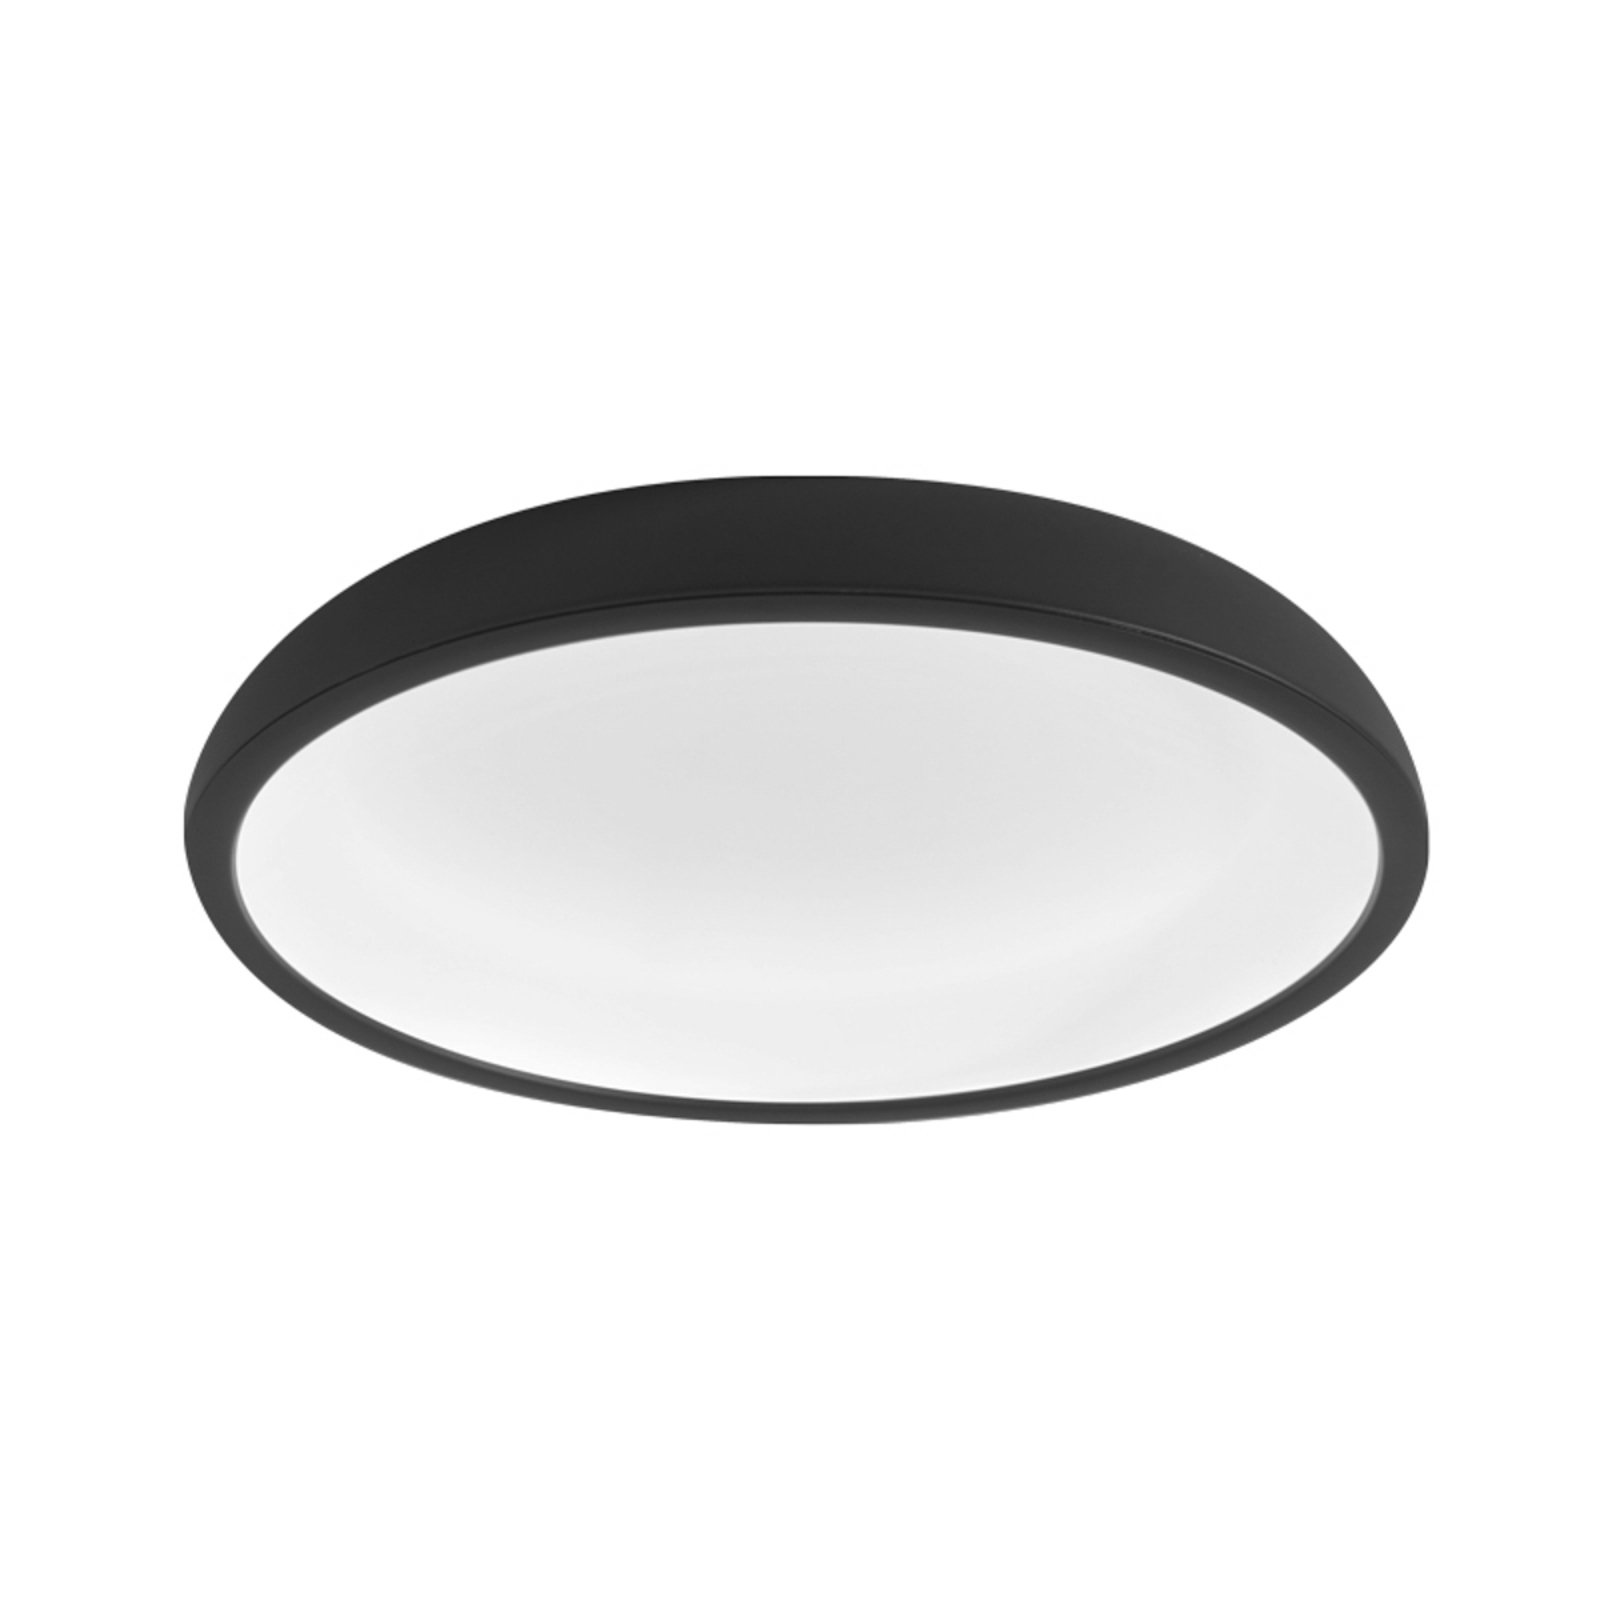 Stilnovo Reflexio LED-taklampa, Ø65cm svart